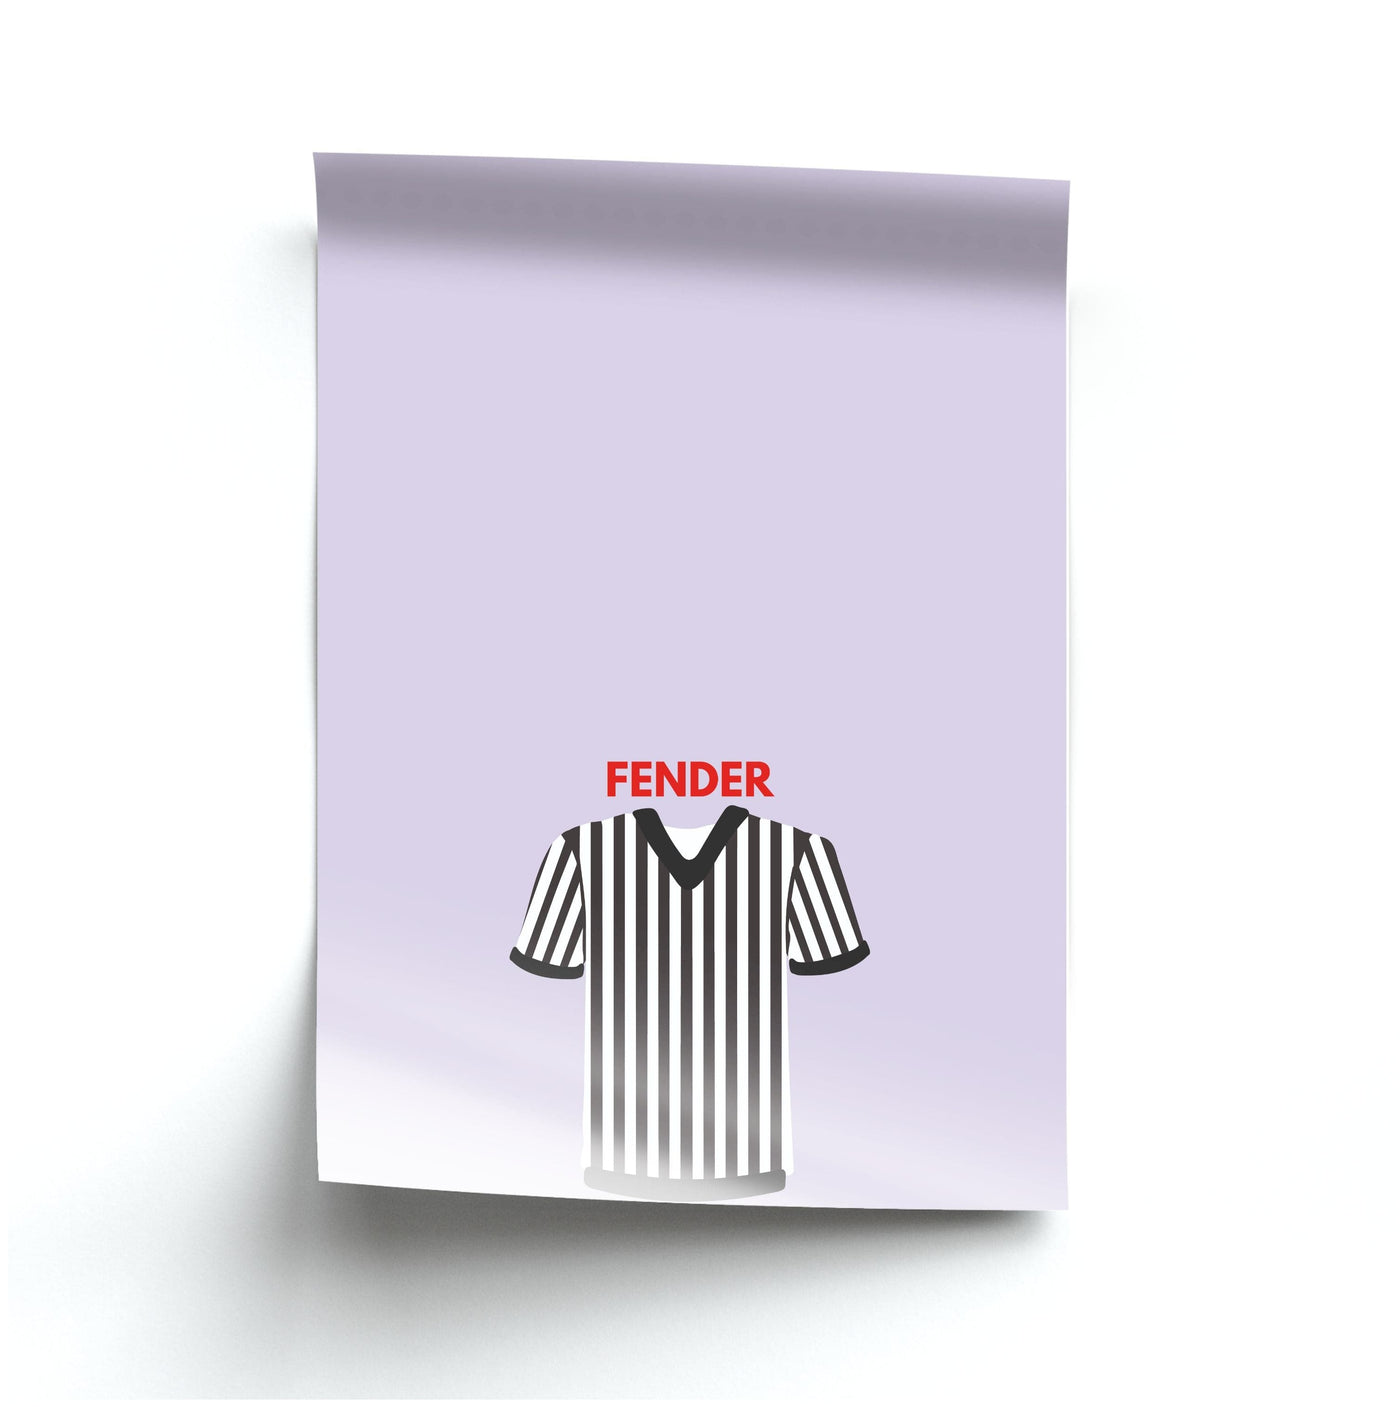 Newcastle - Sam Fender Poster